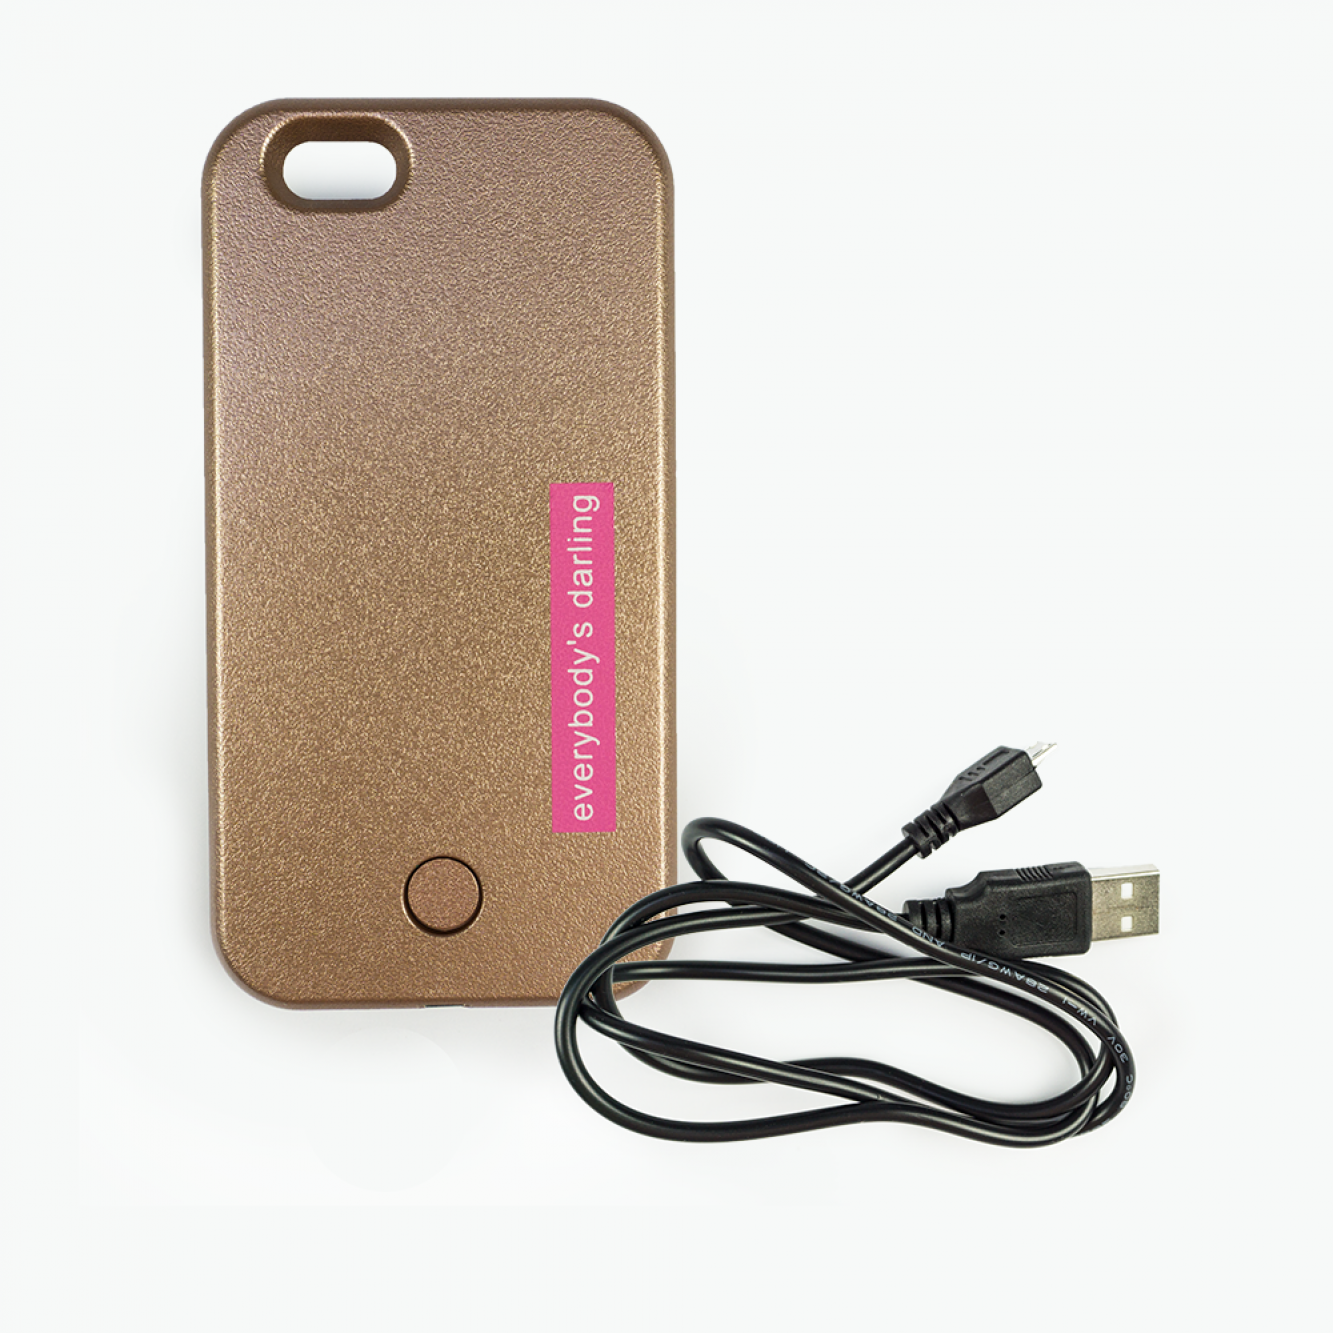 LED Selfie Hülle für iPhone 6 / 6s Plus | Protection Case mit SOS Licht | weiß